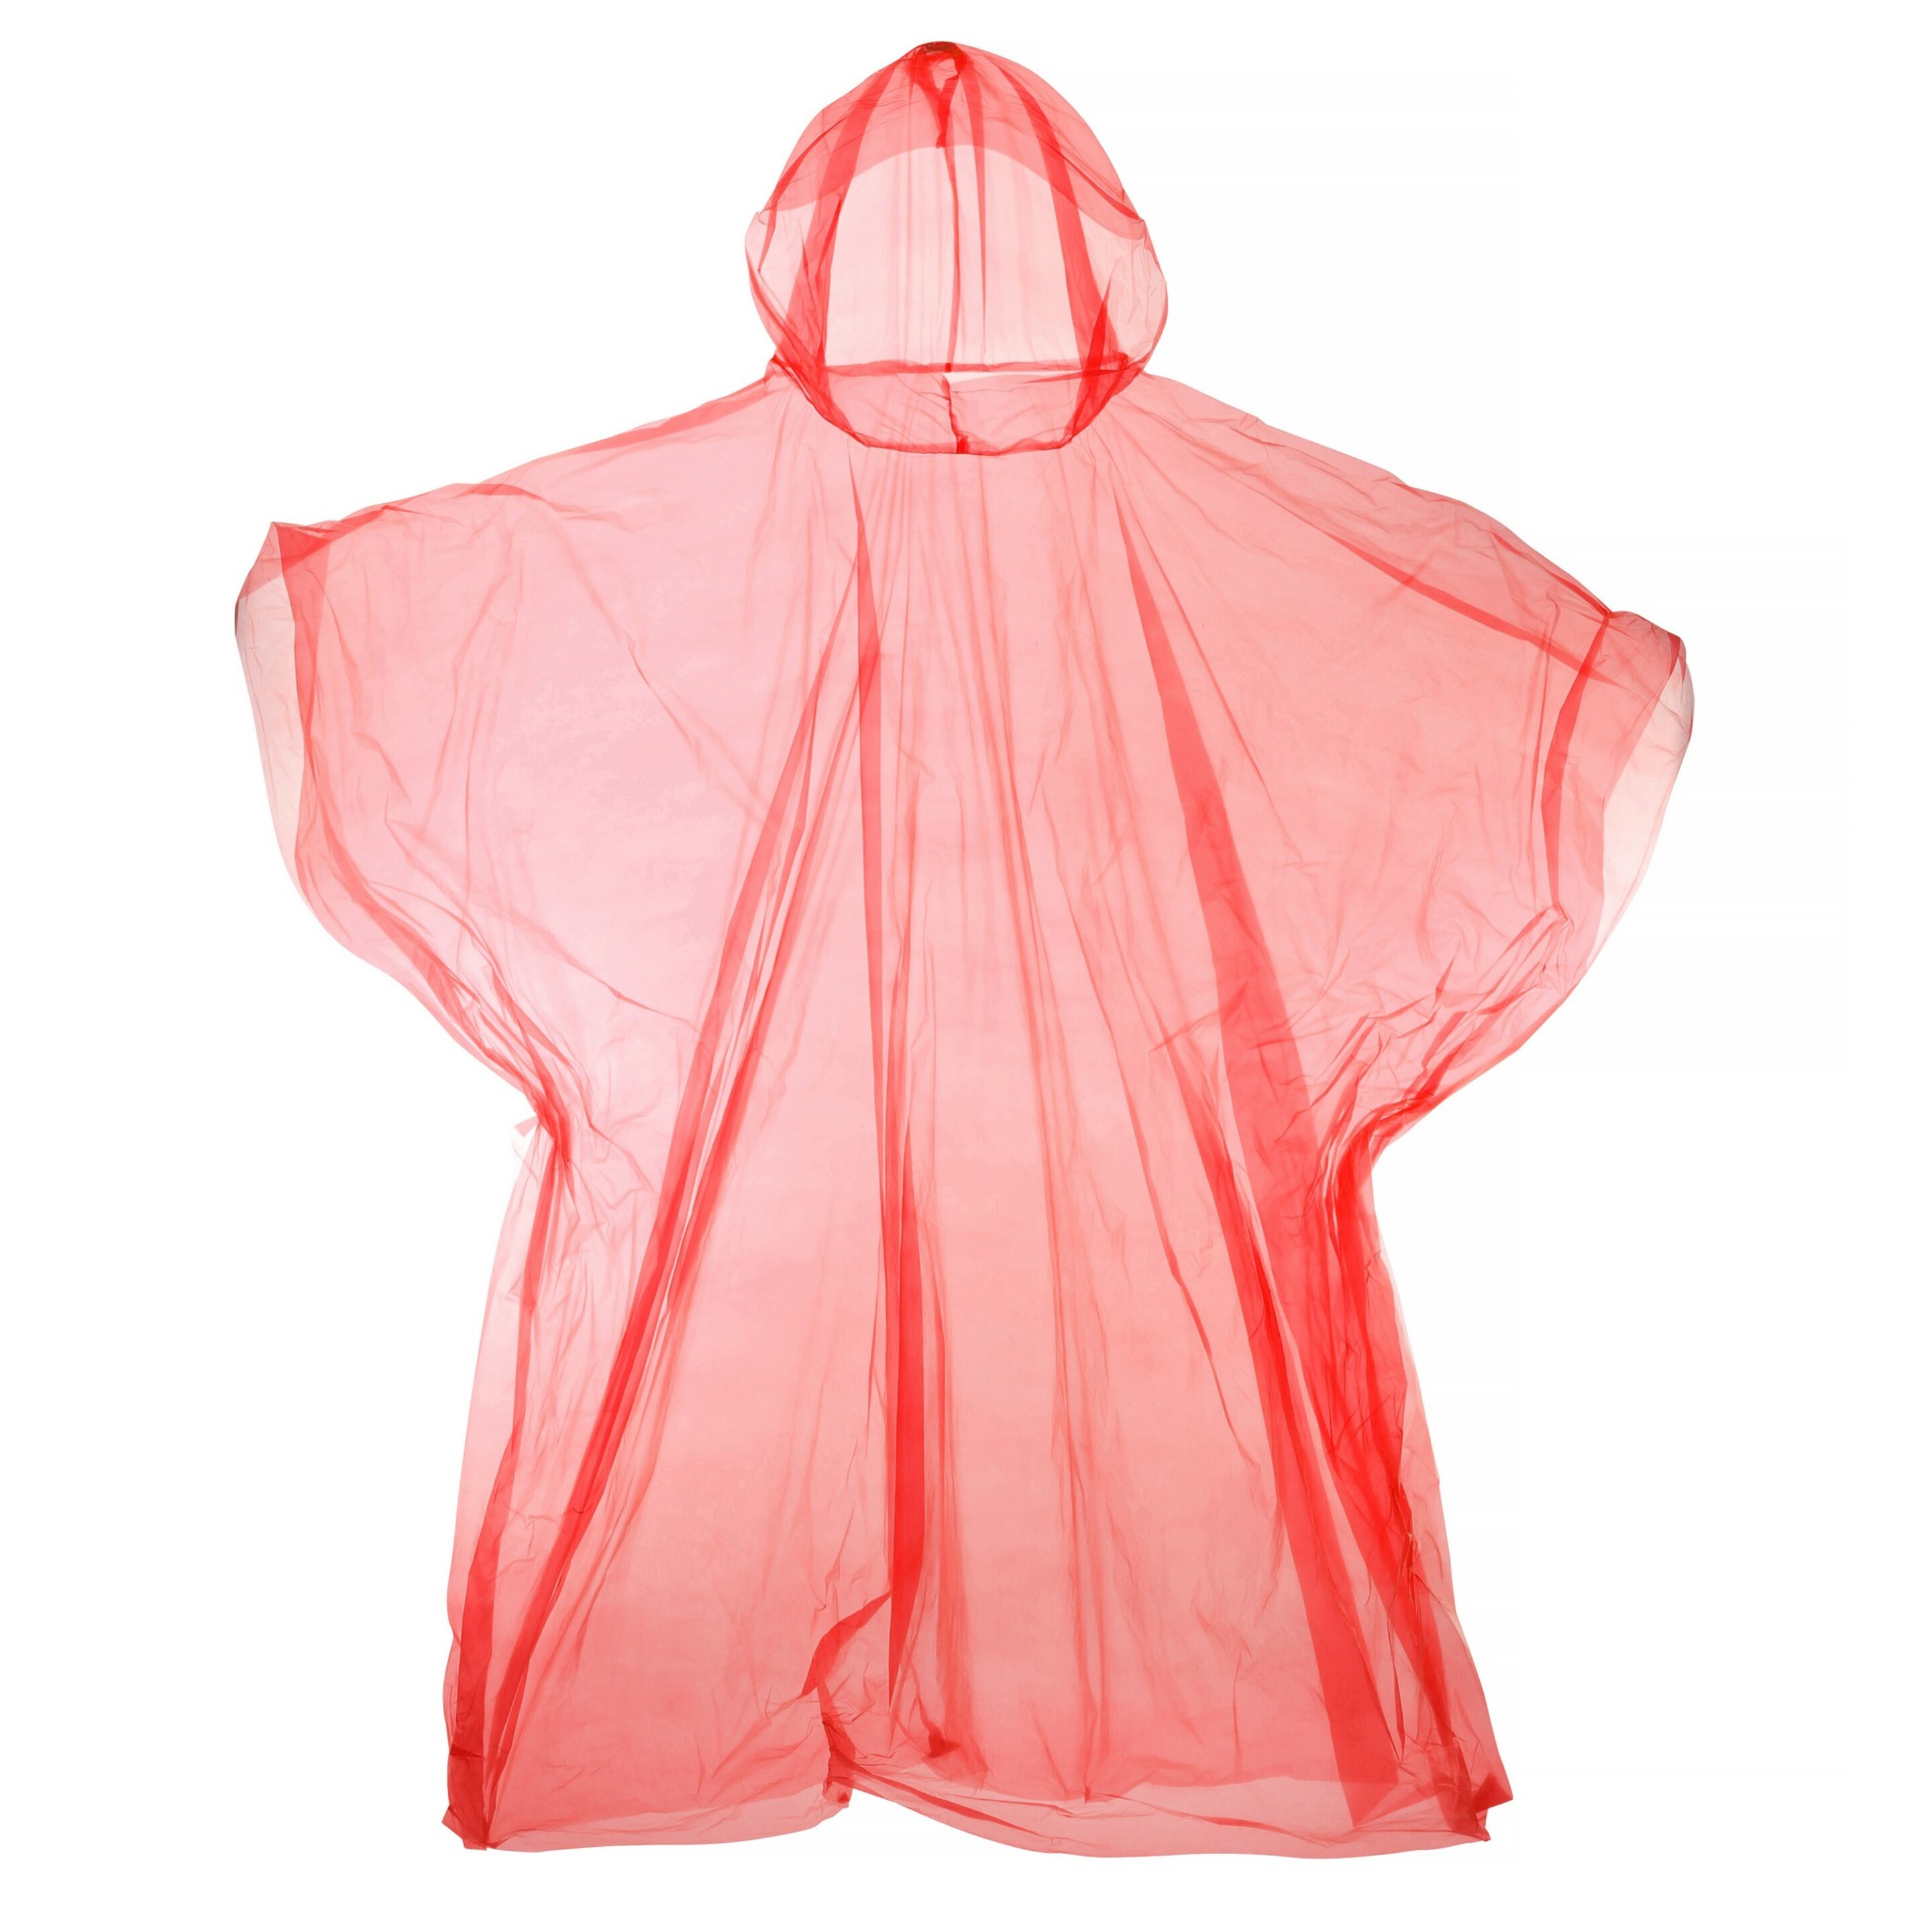 Poncho Reutilizable De Plástico Con Capucha Universal Textiles - Rojo  MKP